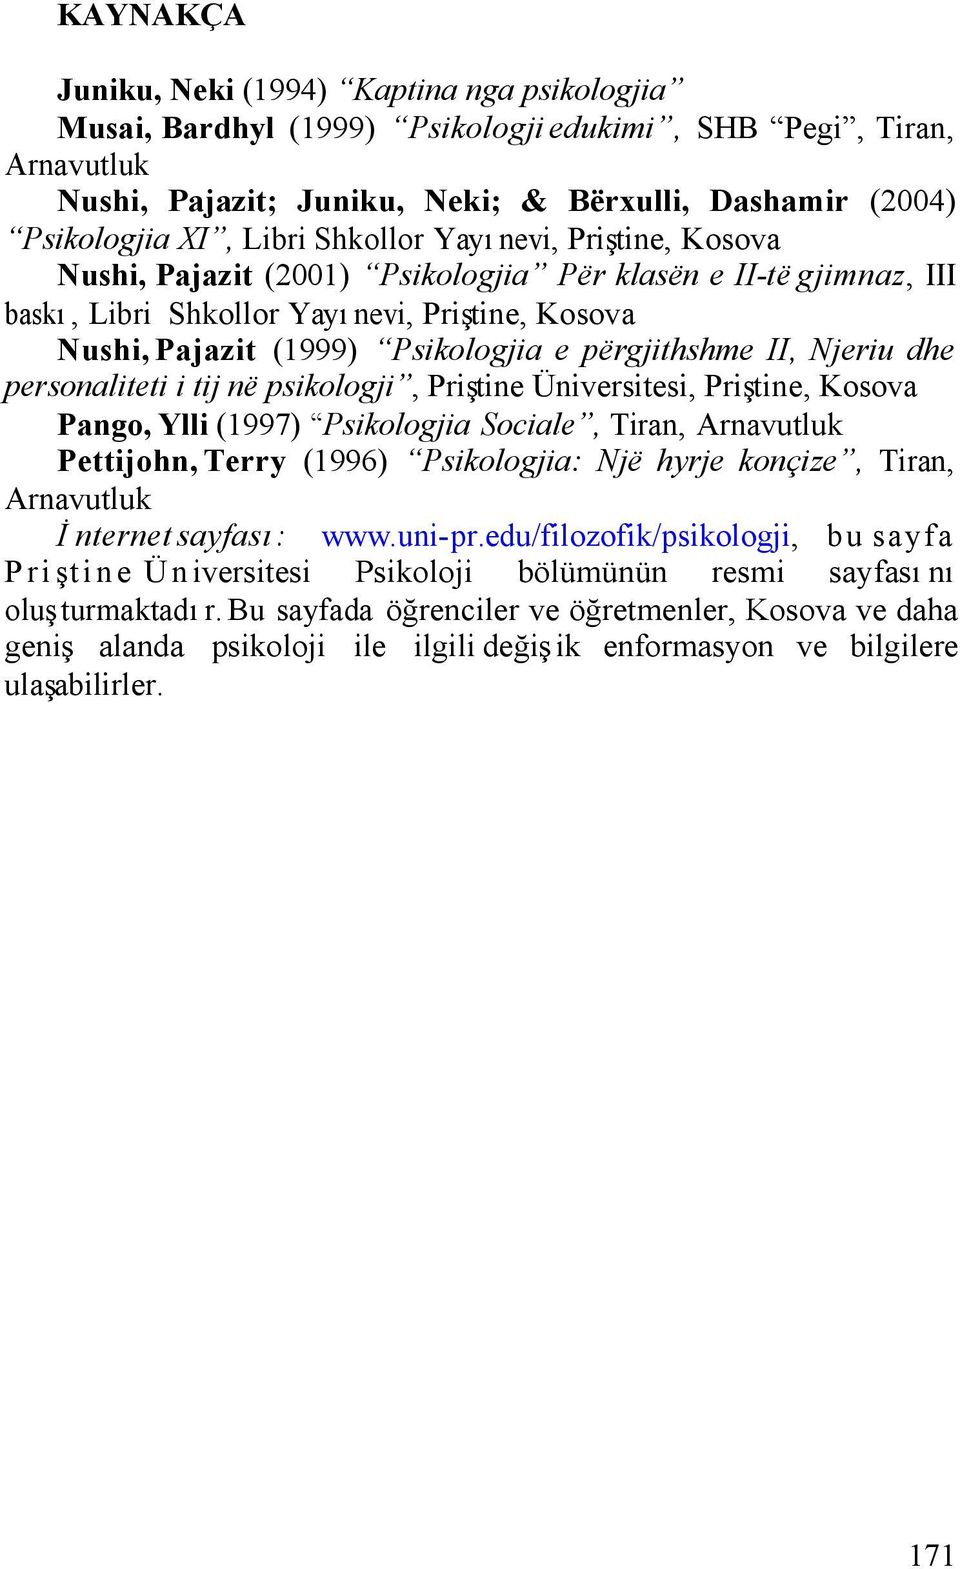 përgjithshme II, Njeriu dhe personaliteti i tij në psikologji, Priştine Üniversitesi, Priştine, Kosova Pango, Ylli (1997) Psikologjia Sociale, Tiran, Arnavutluk Pettijohn, Terry (1996) Psikologjia: